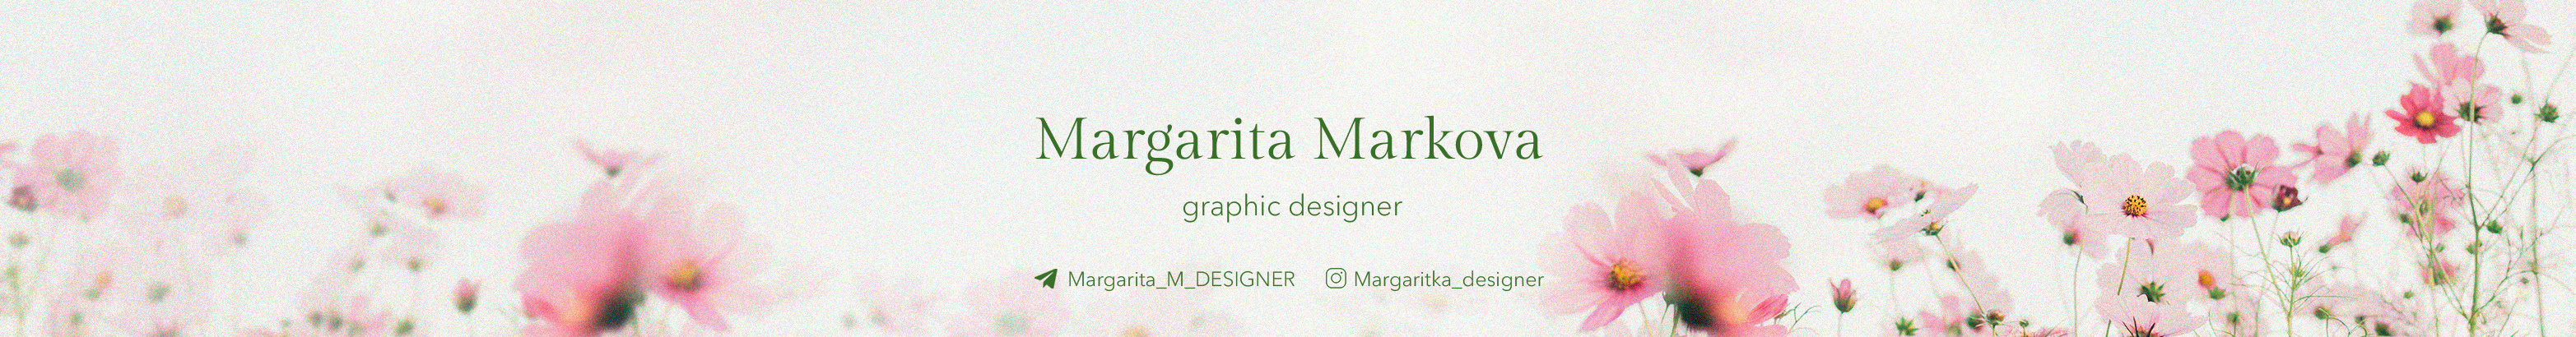 Banner de perfil de Margarita Markova